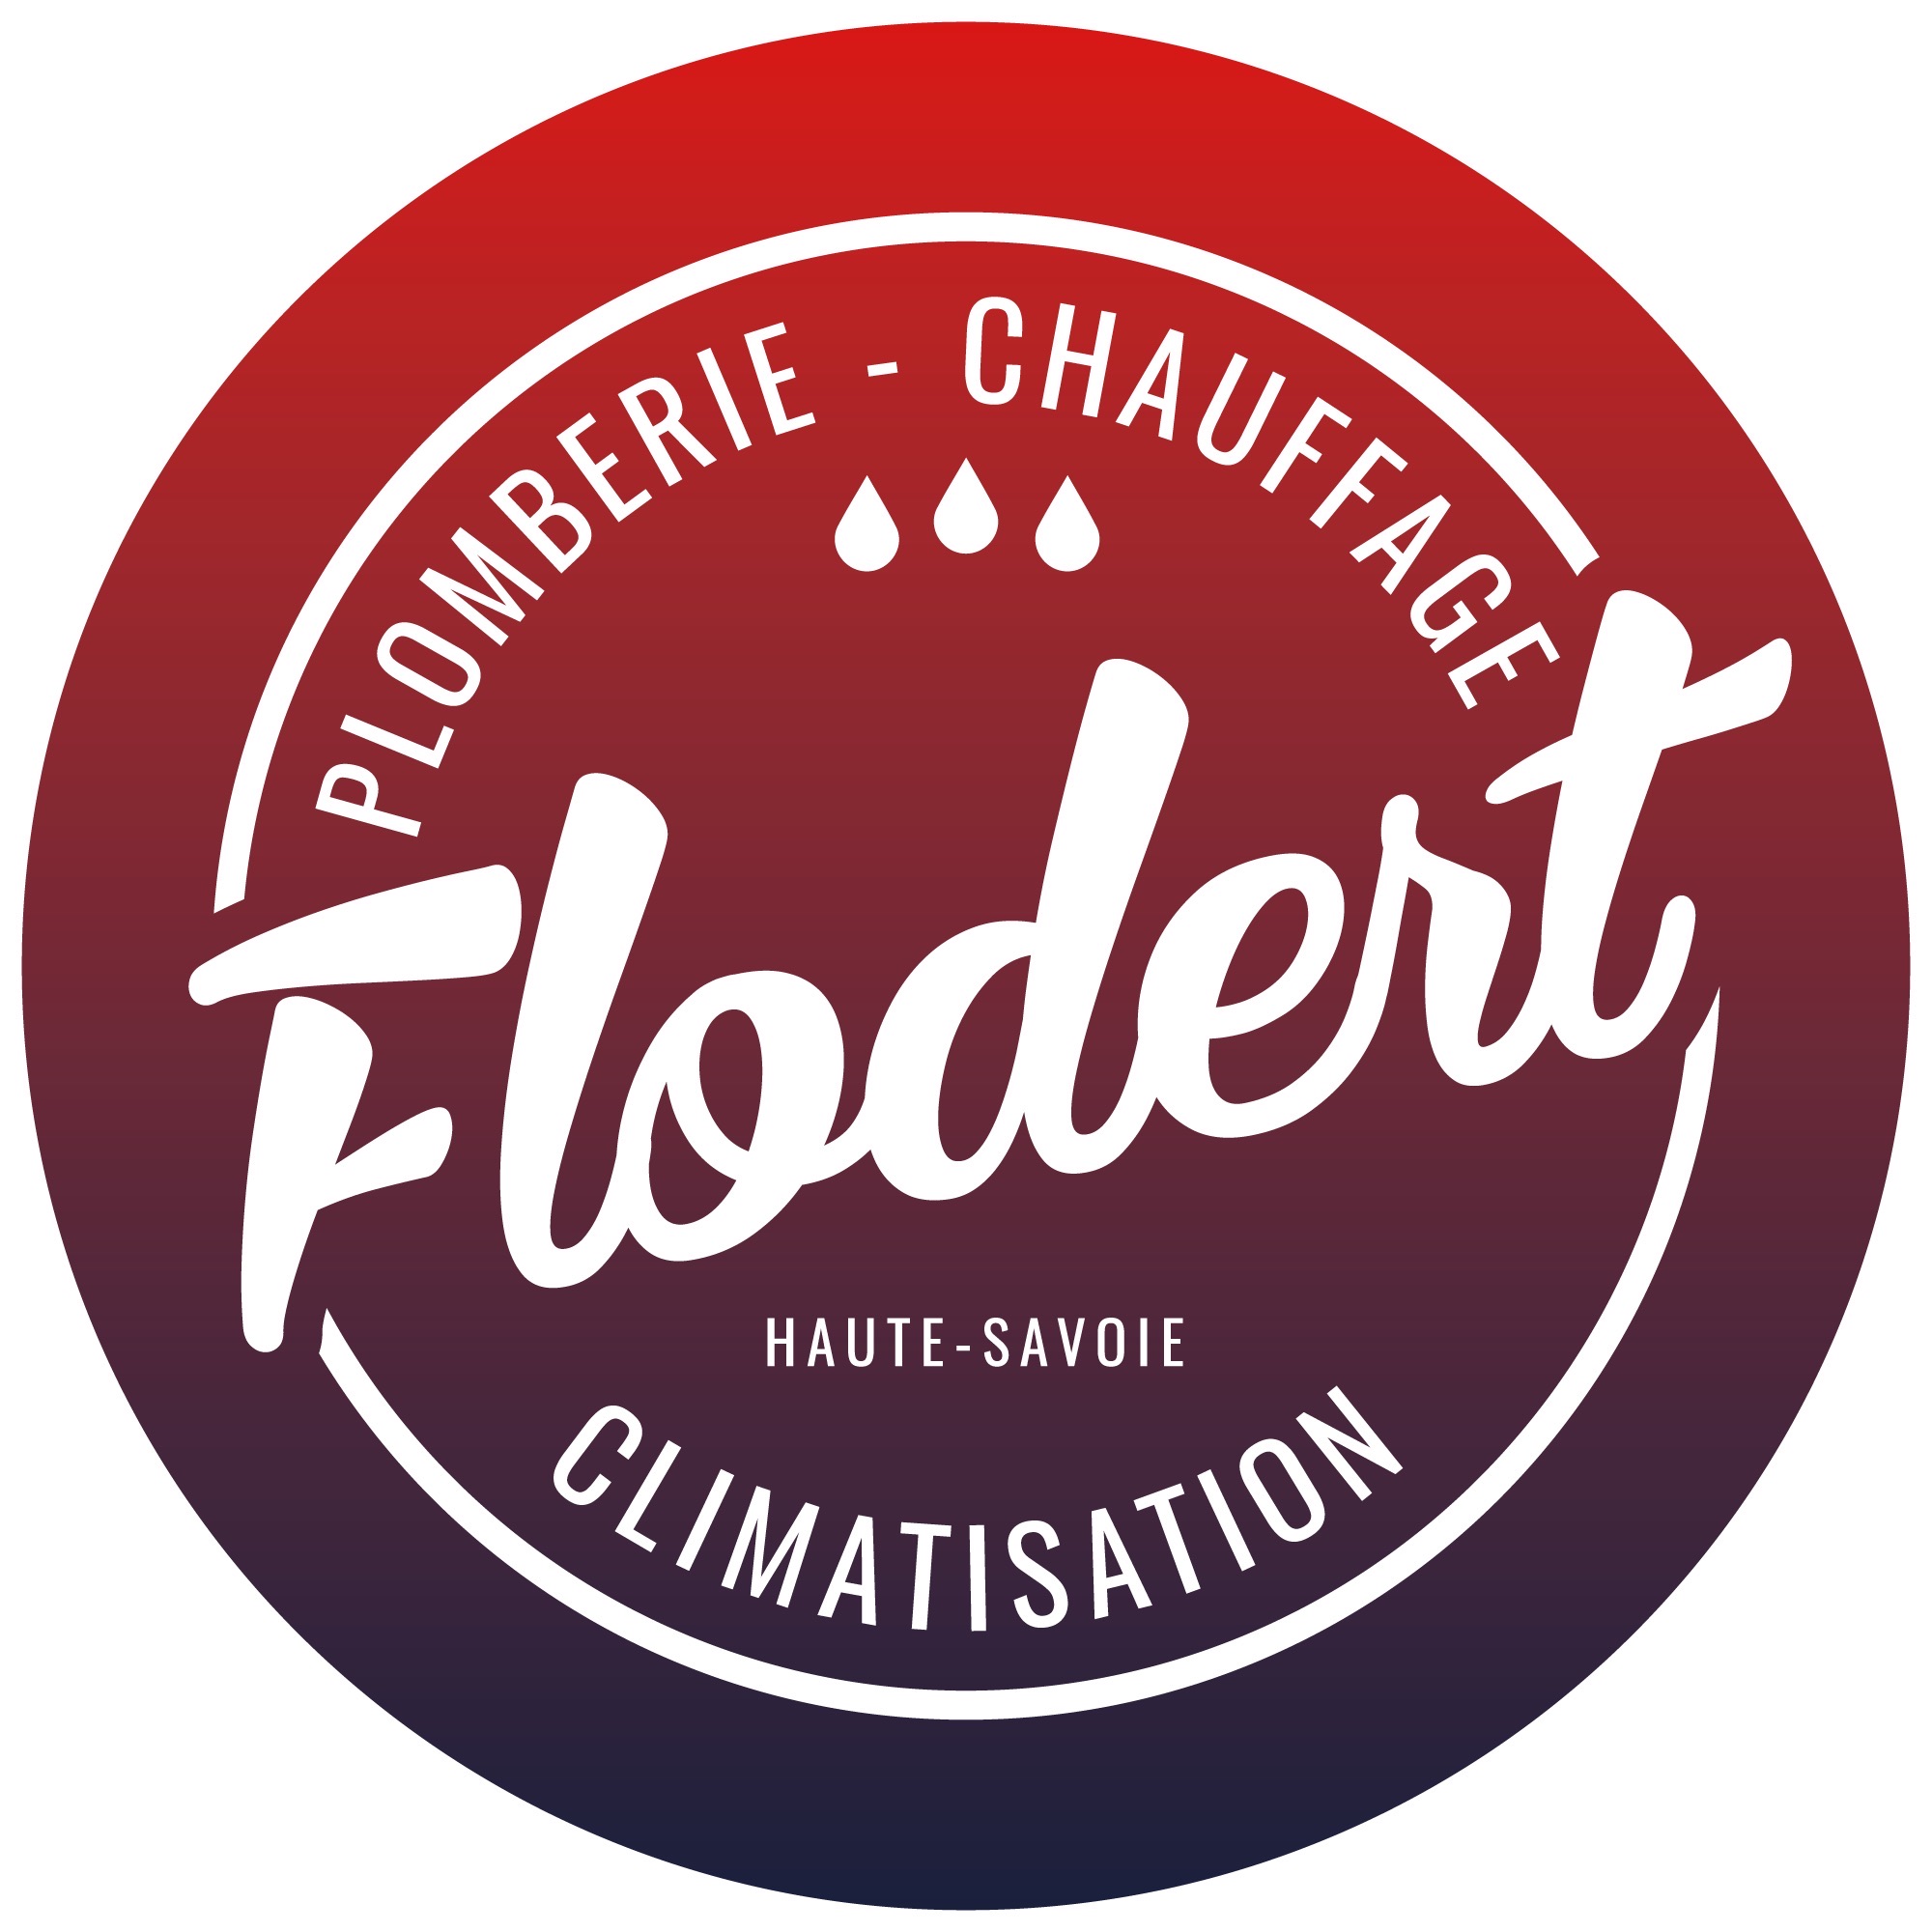 logo plomberie flodert florian-quintal